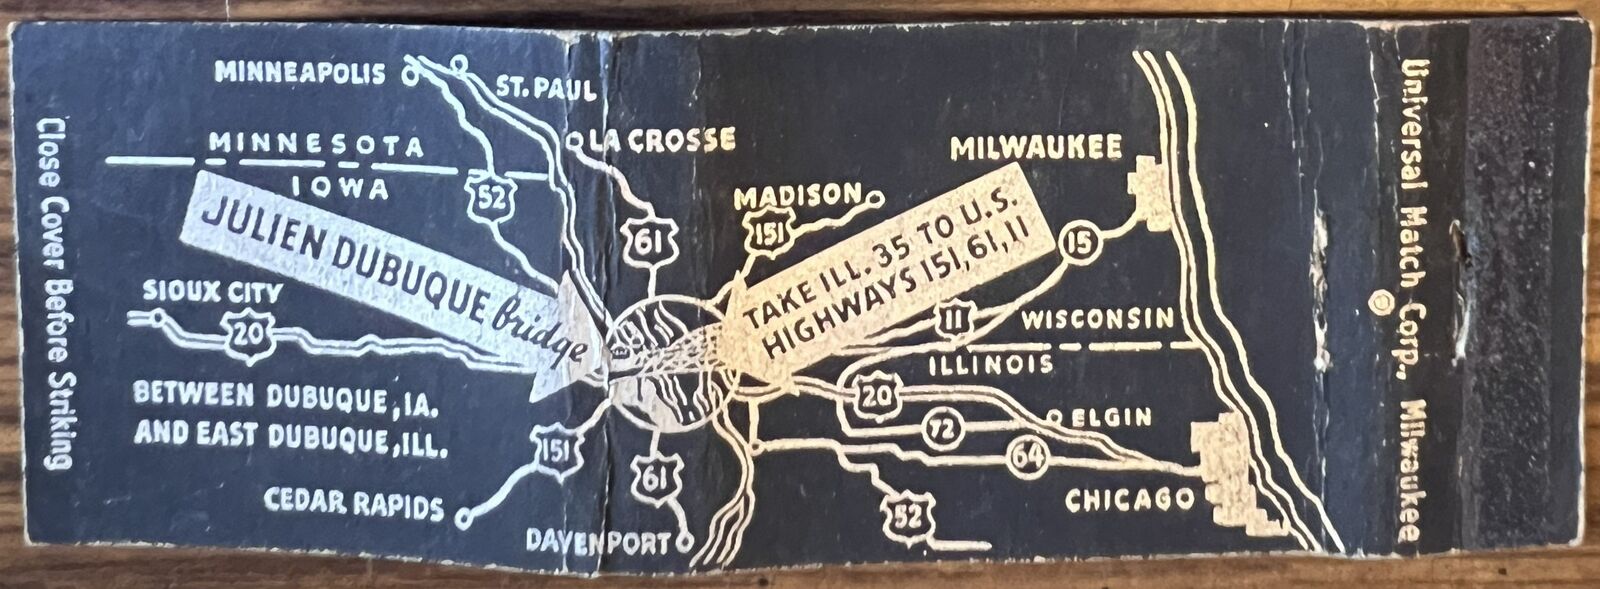 Julien Dubuque Bridge IA Iowa IL Illinois Vintage Full Length Matchbook Cover